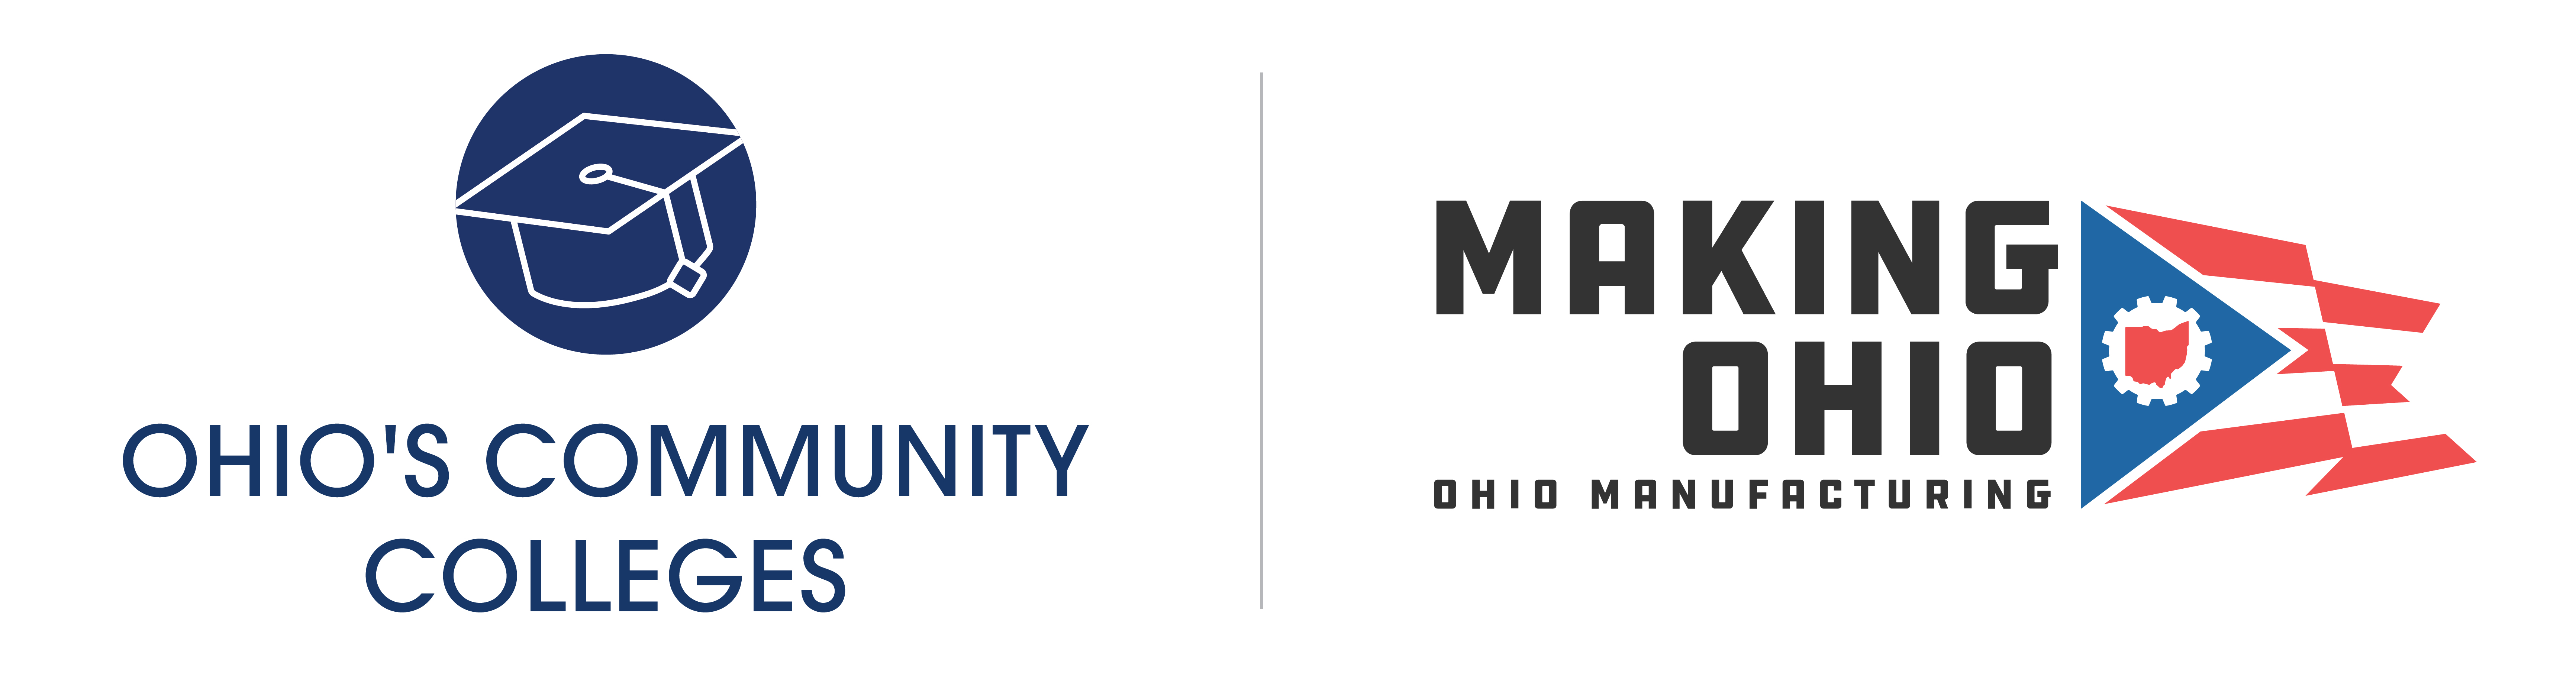 Image - OCC and Making Ohio Logos